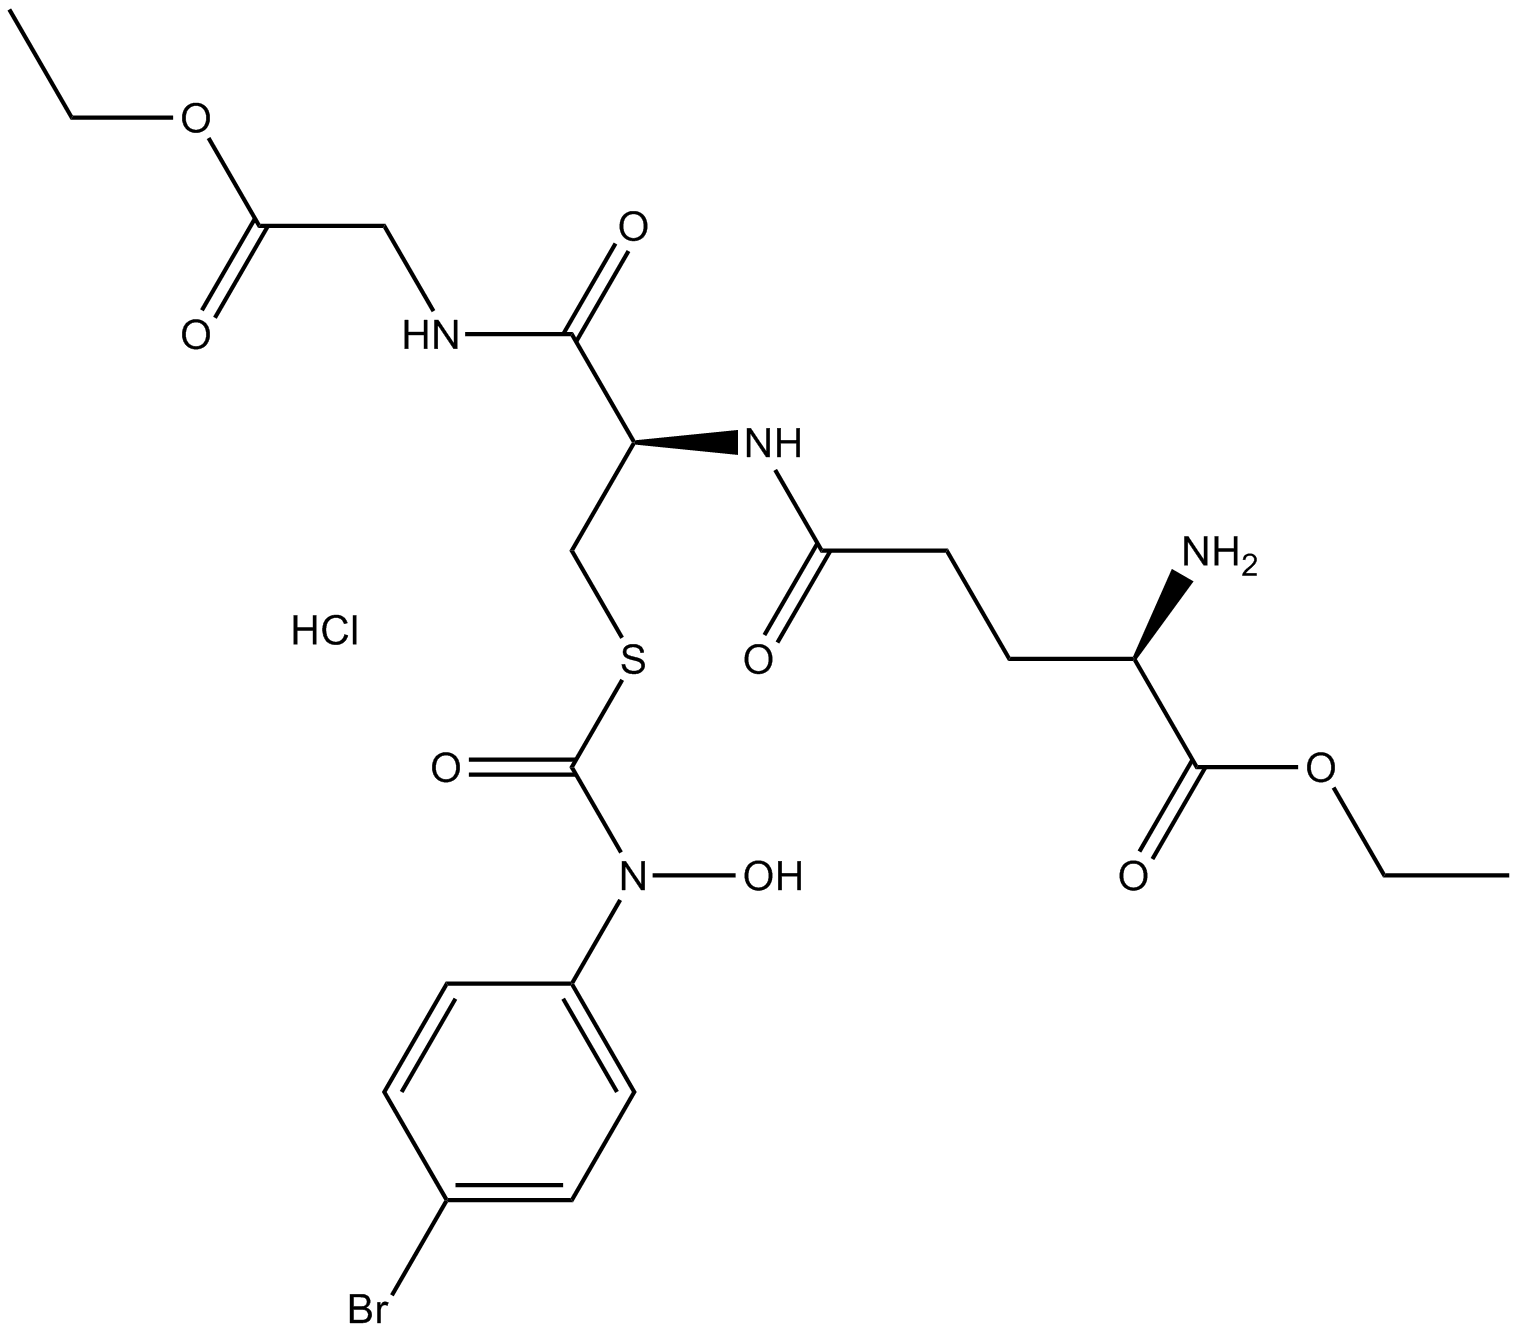 Glyoxalase I inhibitor